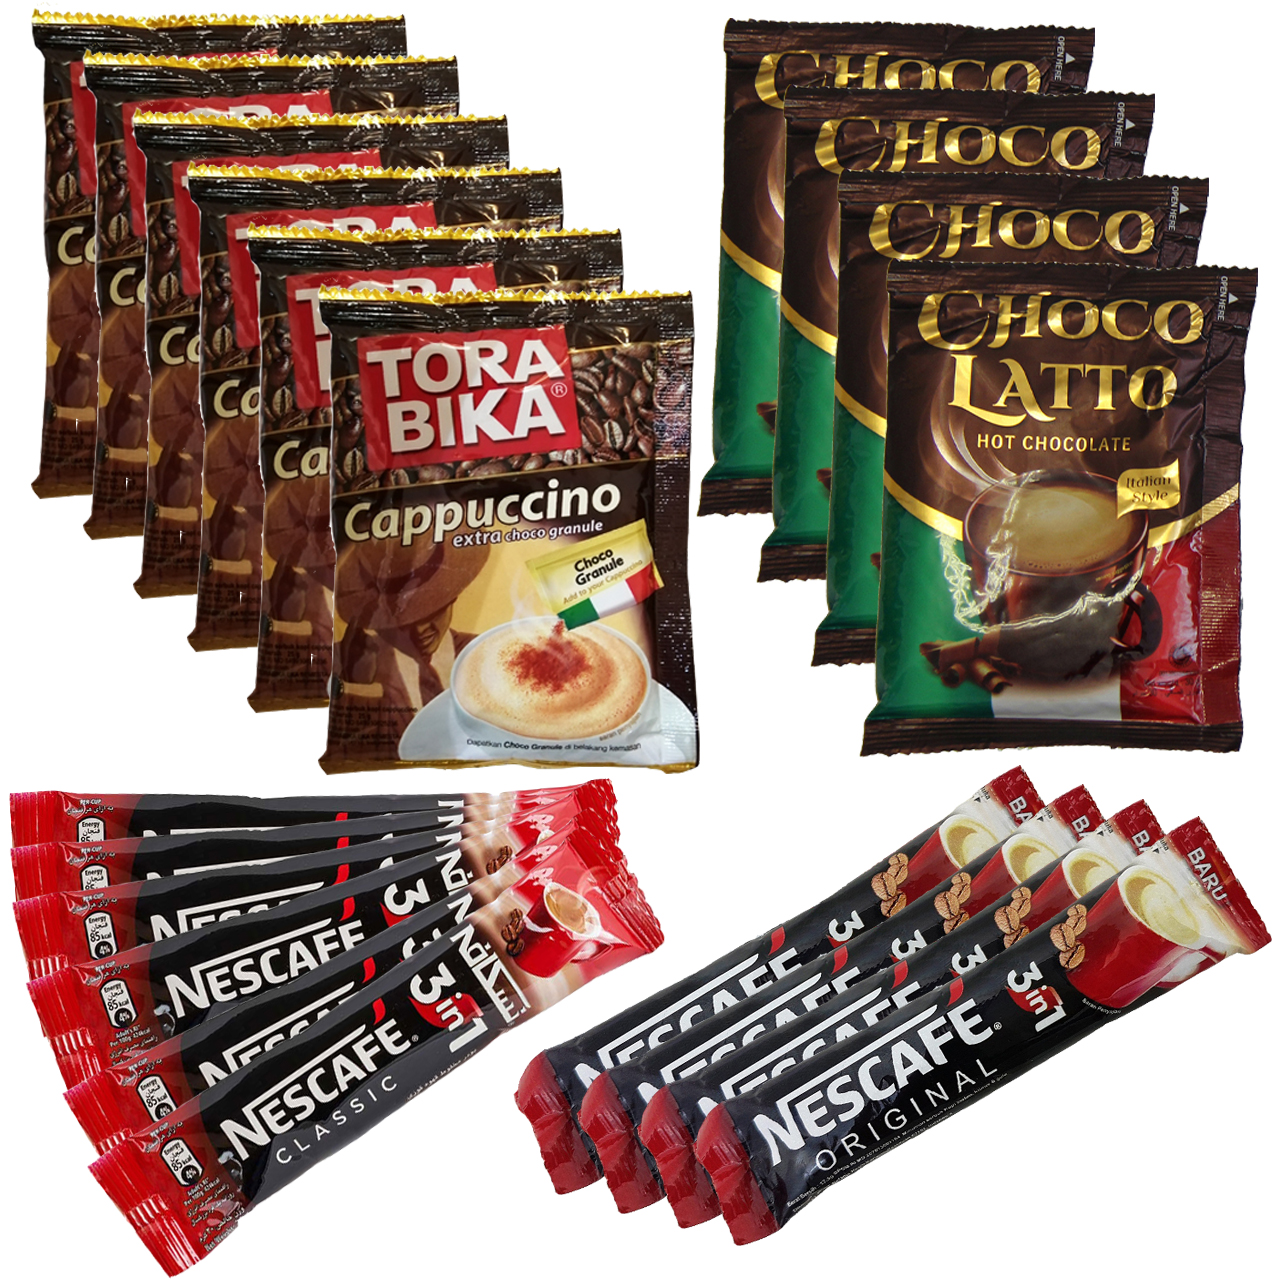 کاپوچینو ترابیکا بسته 6 عددی و هات چاکلت چوکولاتو بسته 4 عددی و قهوه فوری نسکافه بسته 10 عددی